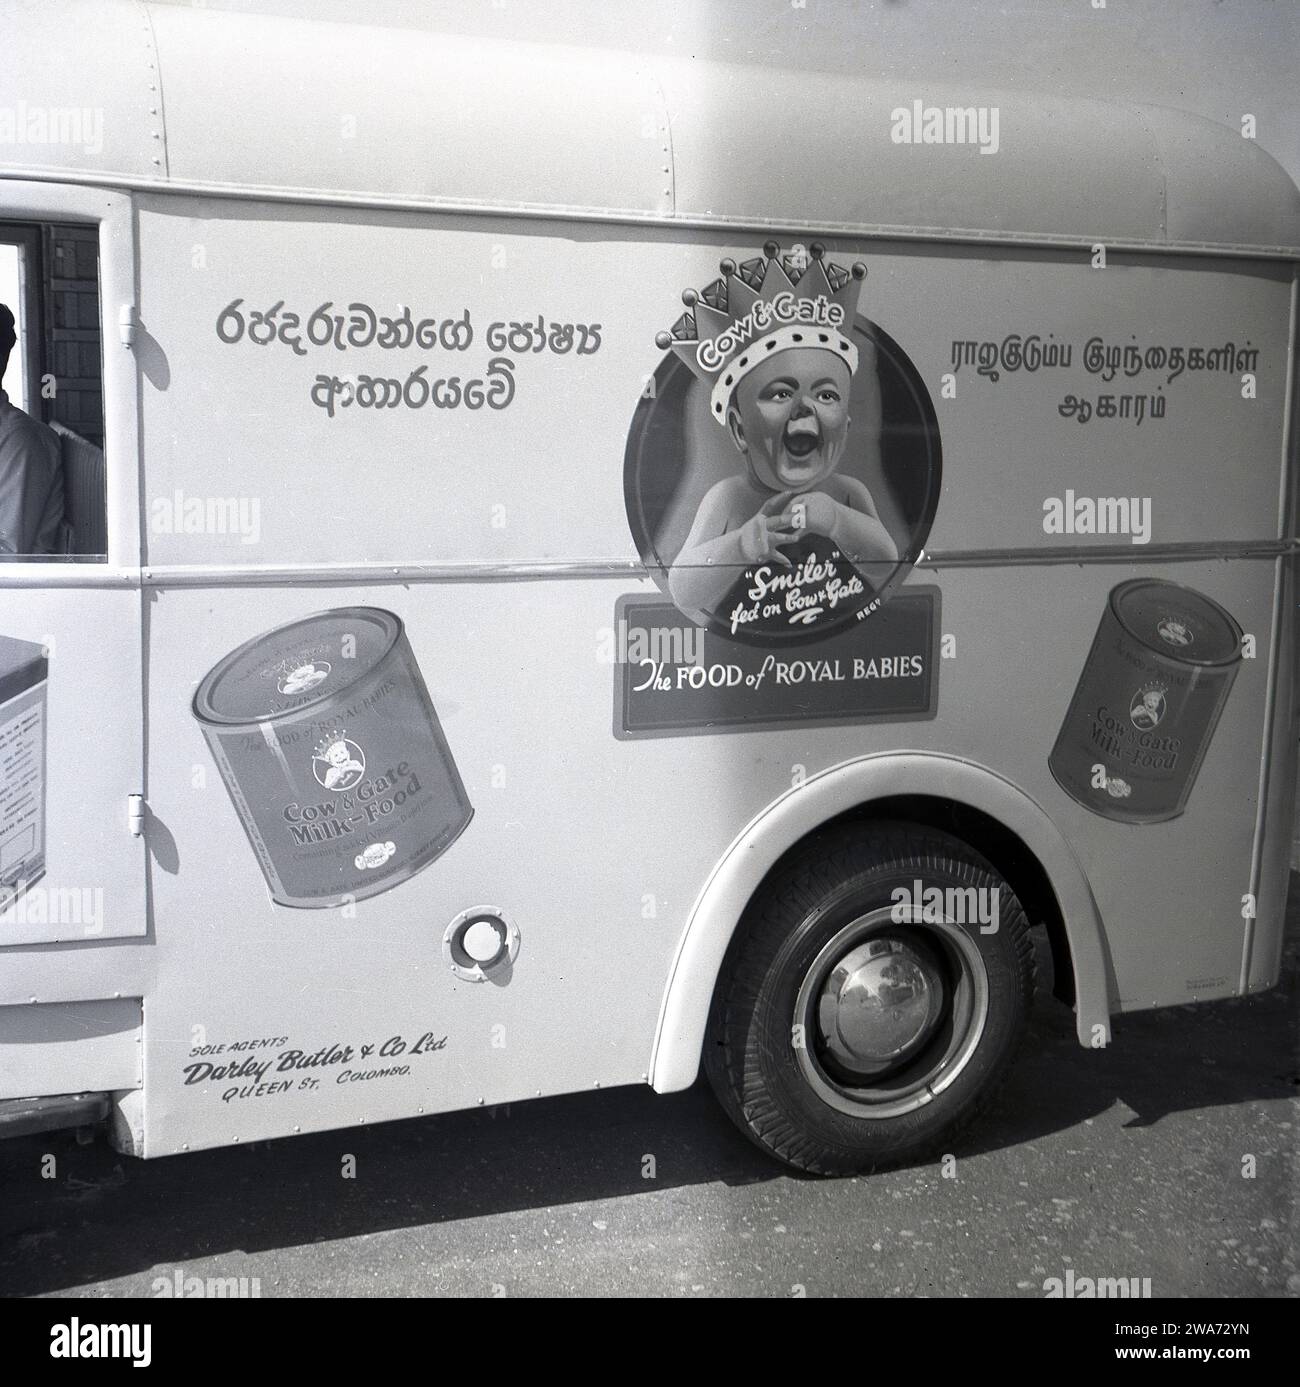 1953, storica, vista laterale di un furgone Commer su una strada a Colombo, Celyon, che mostra un bambino sorridente che indossa una corona con lo strapline, "The Food of Royal Babies" e barattoli di Cow & Gate Milk-Food. Agenti unici: Darley Butler & Co Ltd, Queen St, Colombo. The Cow & Gate 'smiler', un bambino felice e dall'aspetto sano, è apparso per la prima volta sulle sue confezioni di prodotti e pubblicità negli anni '1930 Il "bambino reale; con una corona sulla testa risale al 1937 e l'incoronazione di Briitsh re Giorgio vi, quando la compagnia di diari inglese iniziò a usare la "Royal Association" per sostenere la loro formula di latte per bambini. Foto Stock